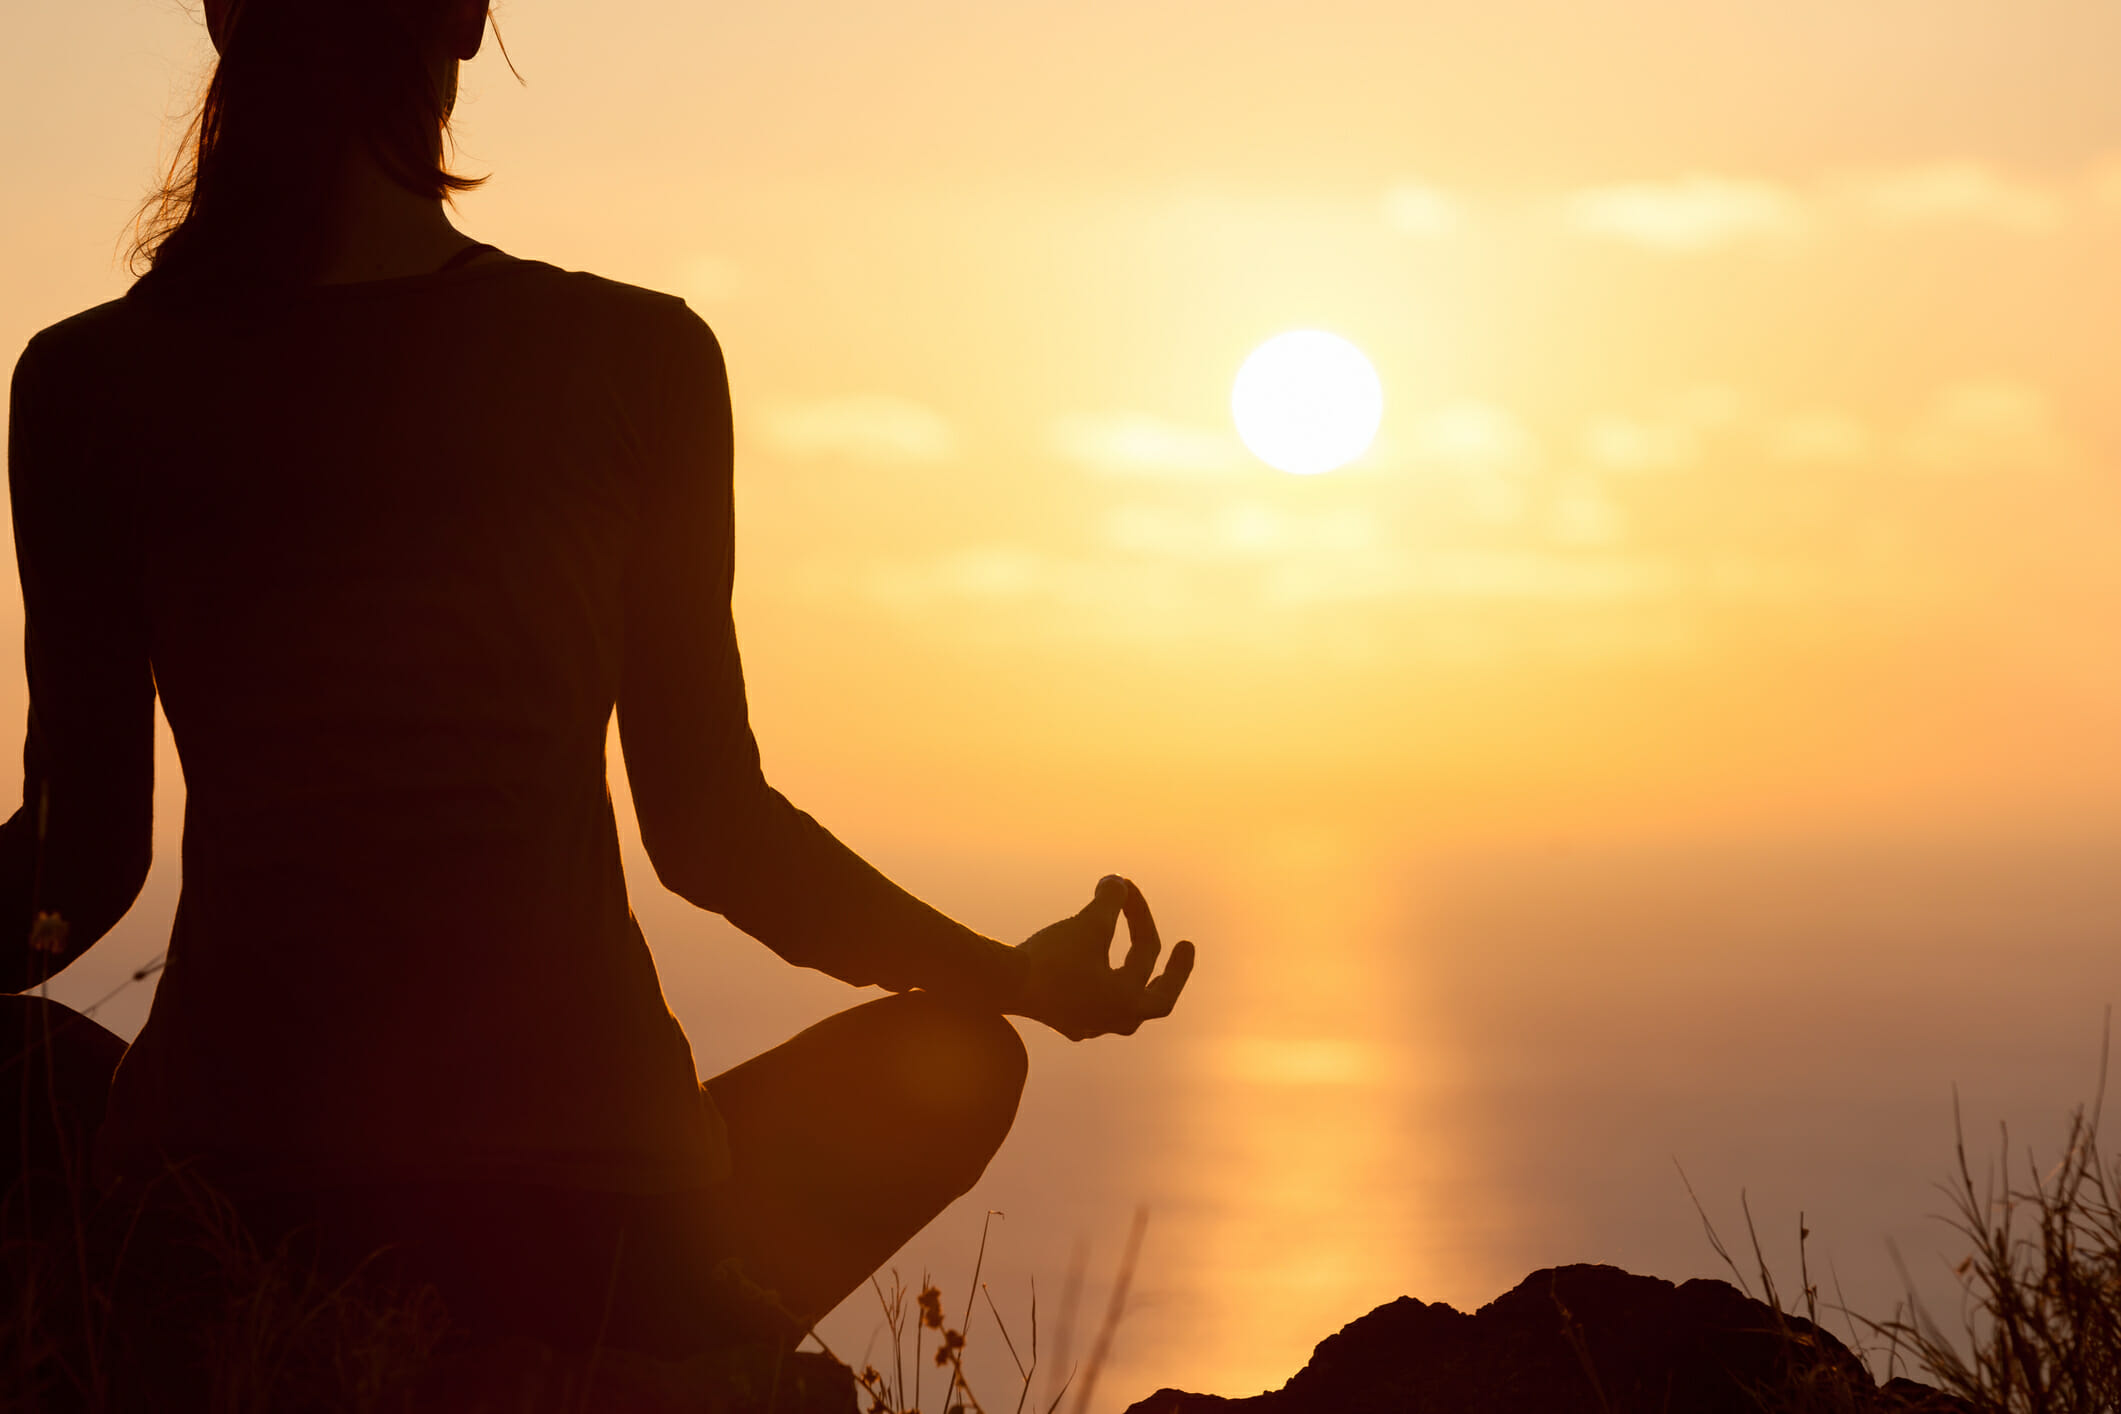 Manage stress by meditating, breathing exercises